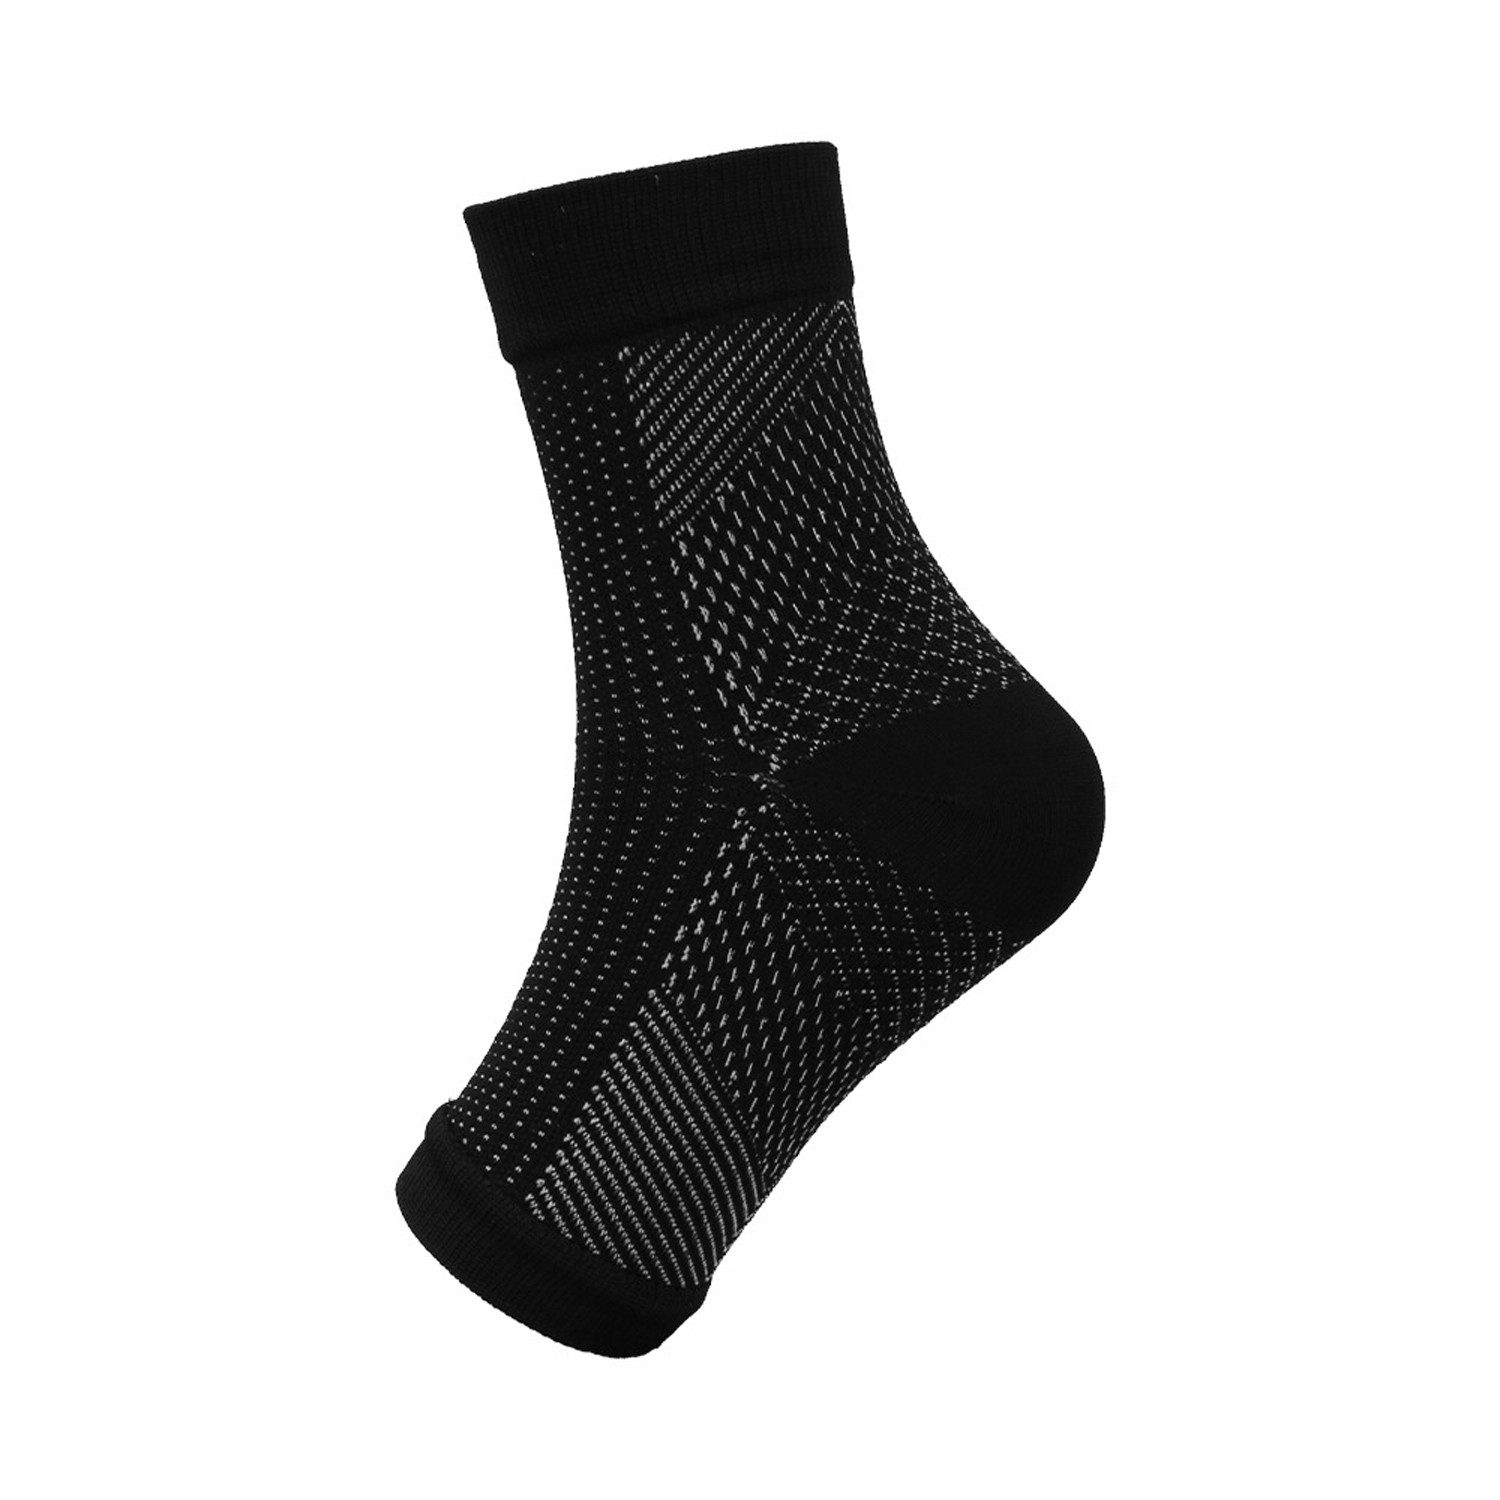 FIDDY Socken 2 Paar orthopädische Kompressionsstrümpfe zur Knöchelunterstützung